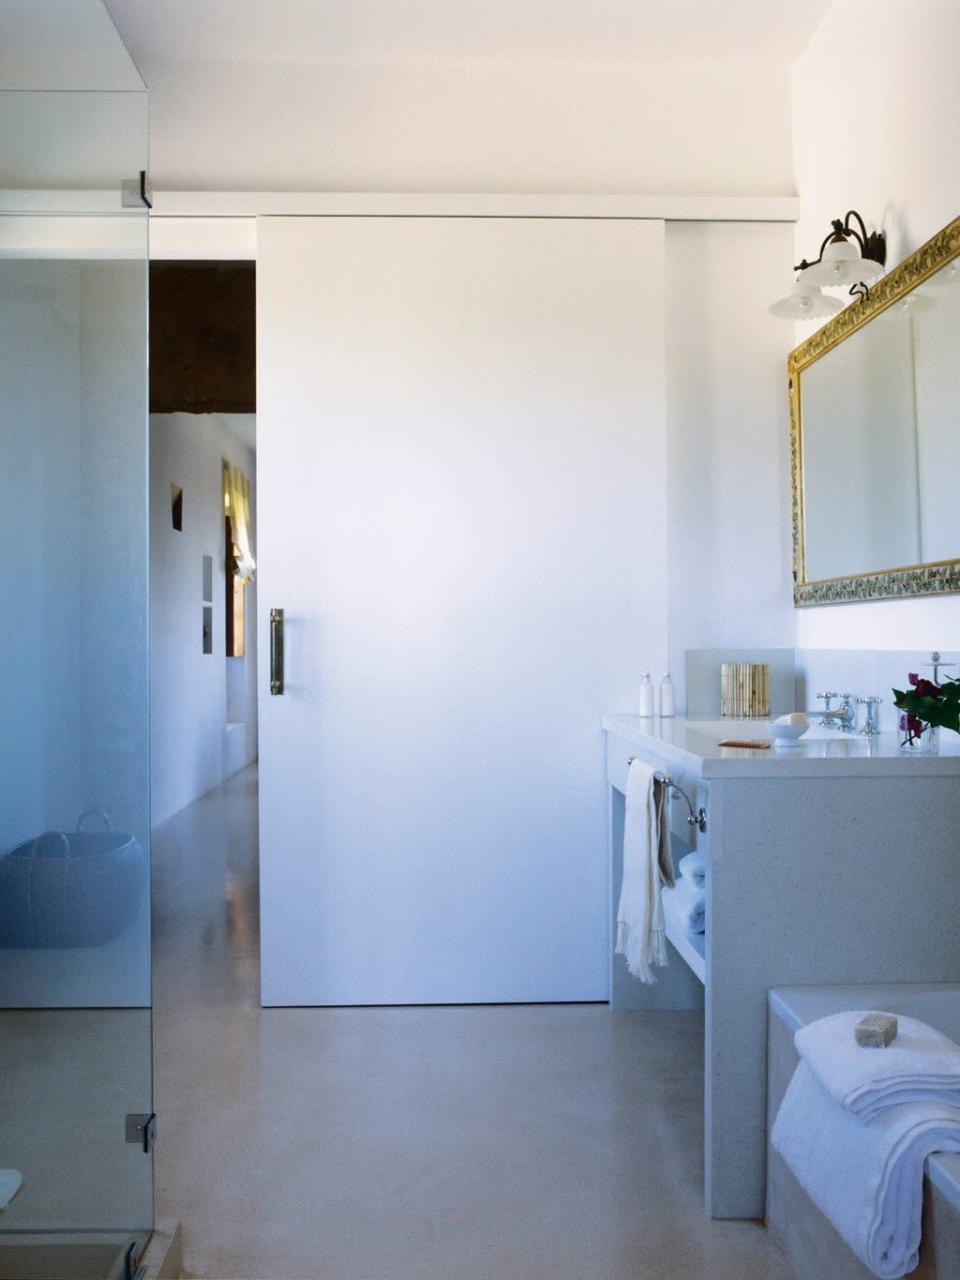 <p>Un panel corredero multiplica el espacio en este cuarto de baño. La hoja de madera blanca, sencilla y sin ornamentos, se desliza en un carril tras la moldura. Las puertas correderas son una <a href="https://www.elledecor.com/es/decoracion/g34594817/mini-banos-pequenos-aseos-invitados/" rel="nofollow noopener" target="_blank" data-ylk="slk:solución perfecta para aseos y cuartos de baño pequeños." class="link ">solución perfecta para aseos y cuartos de baño pequeños.</a></p>